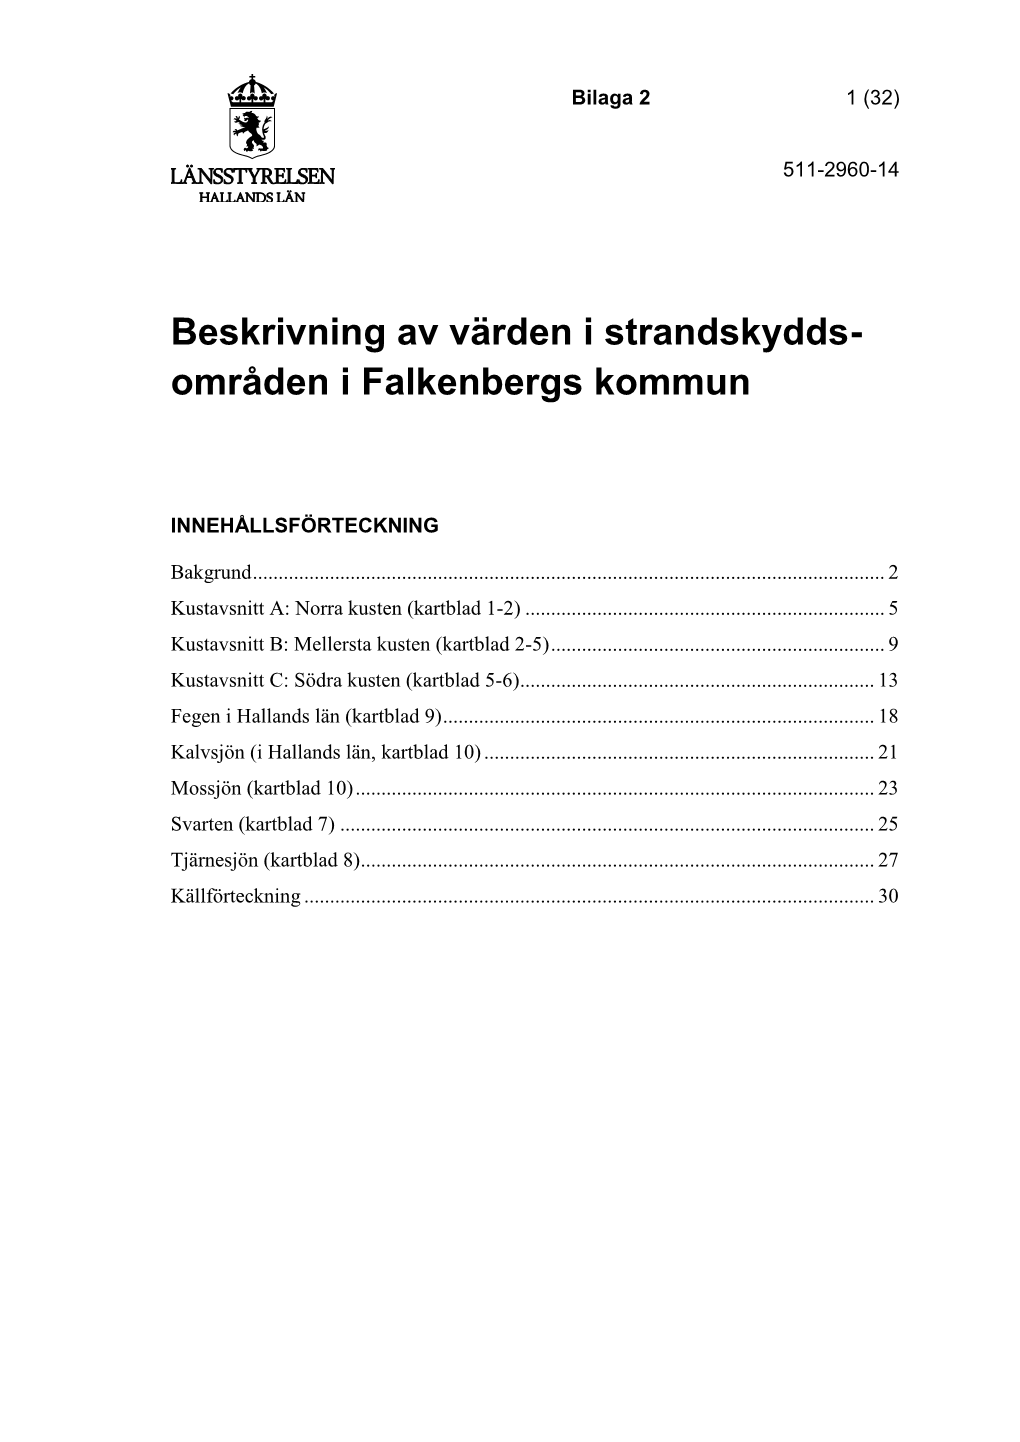 Beskrivning Av Värden I Strandskydds- Områden I Falkenbergs Kommun